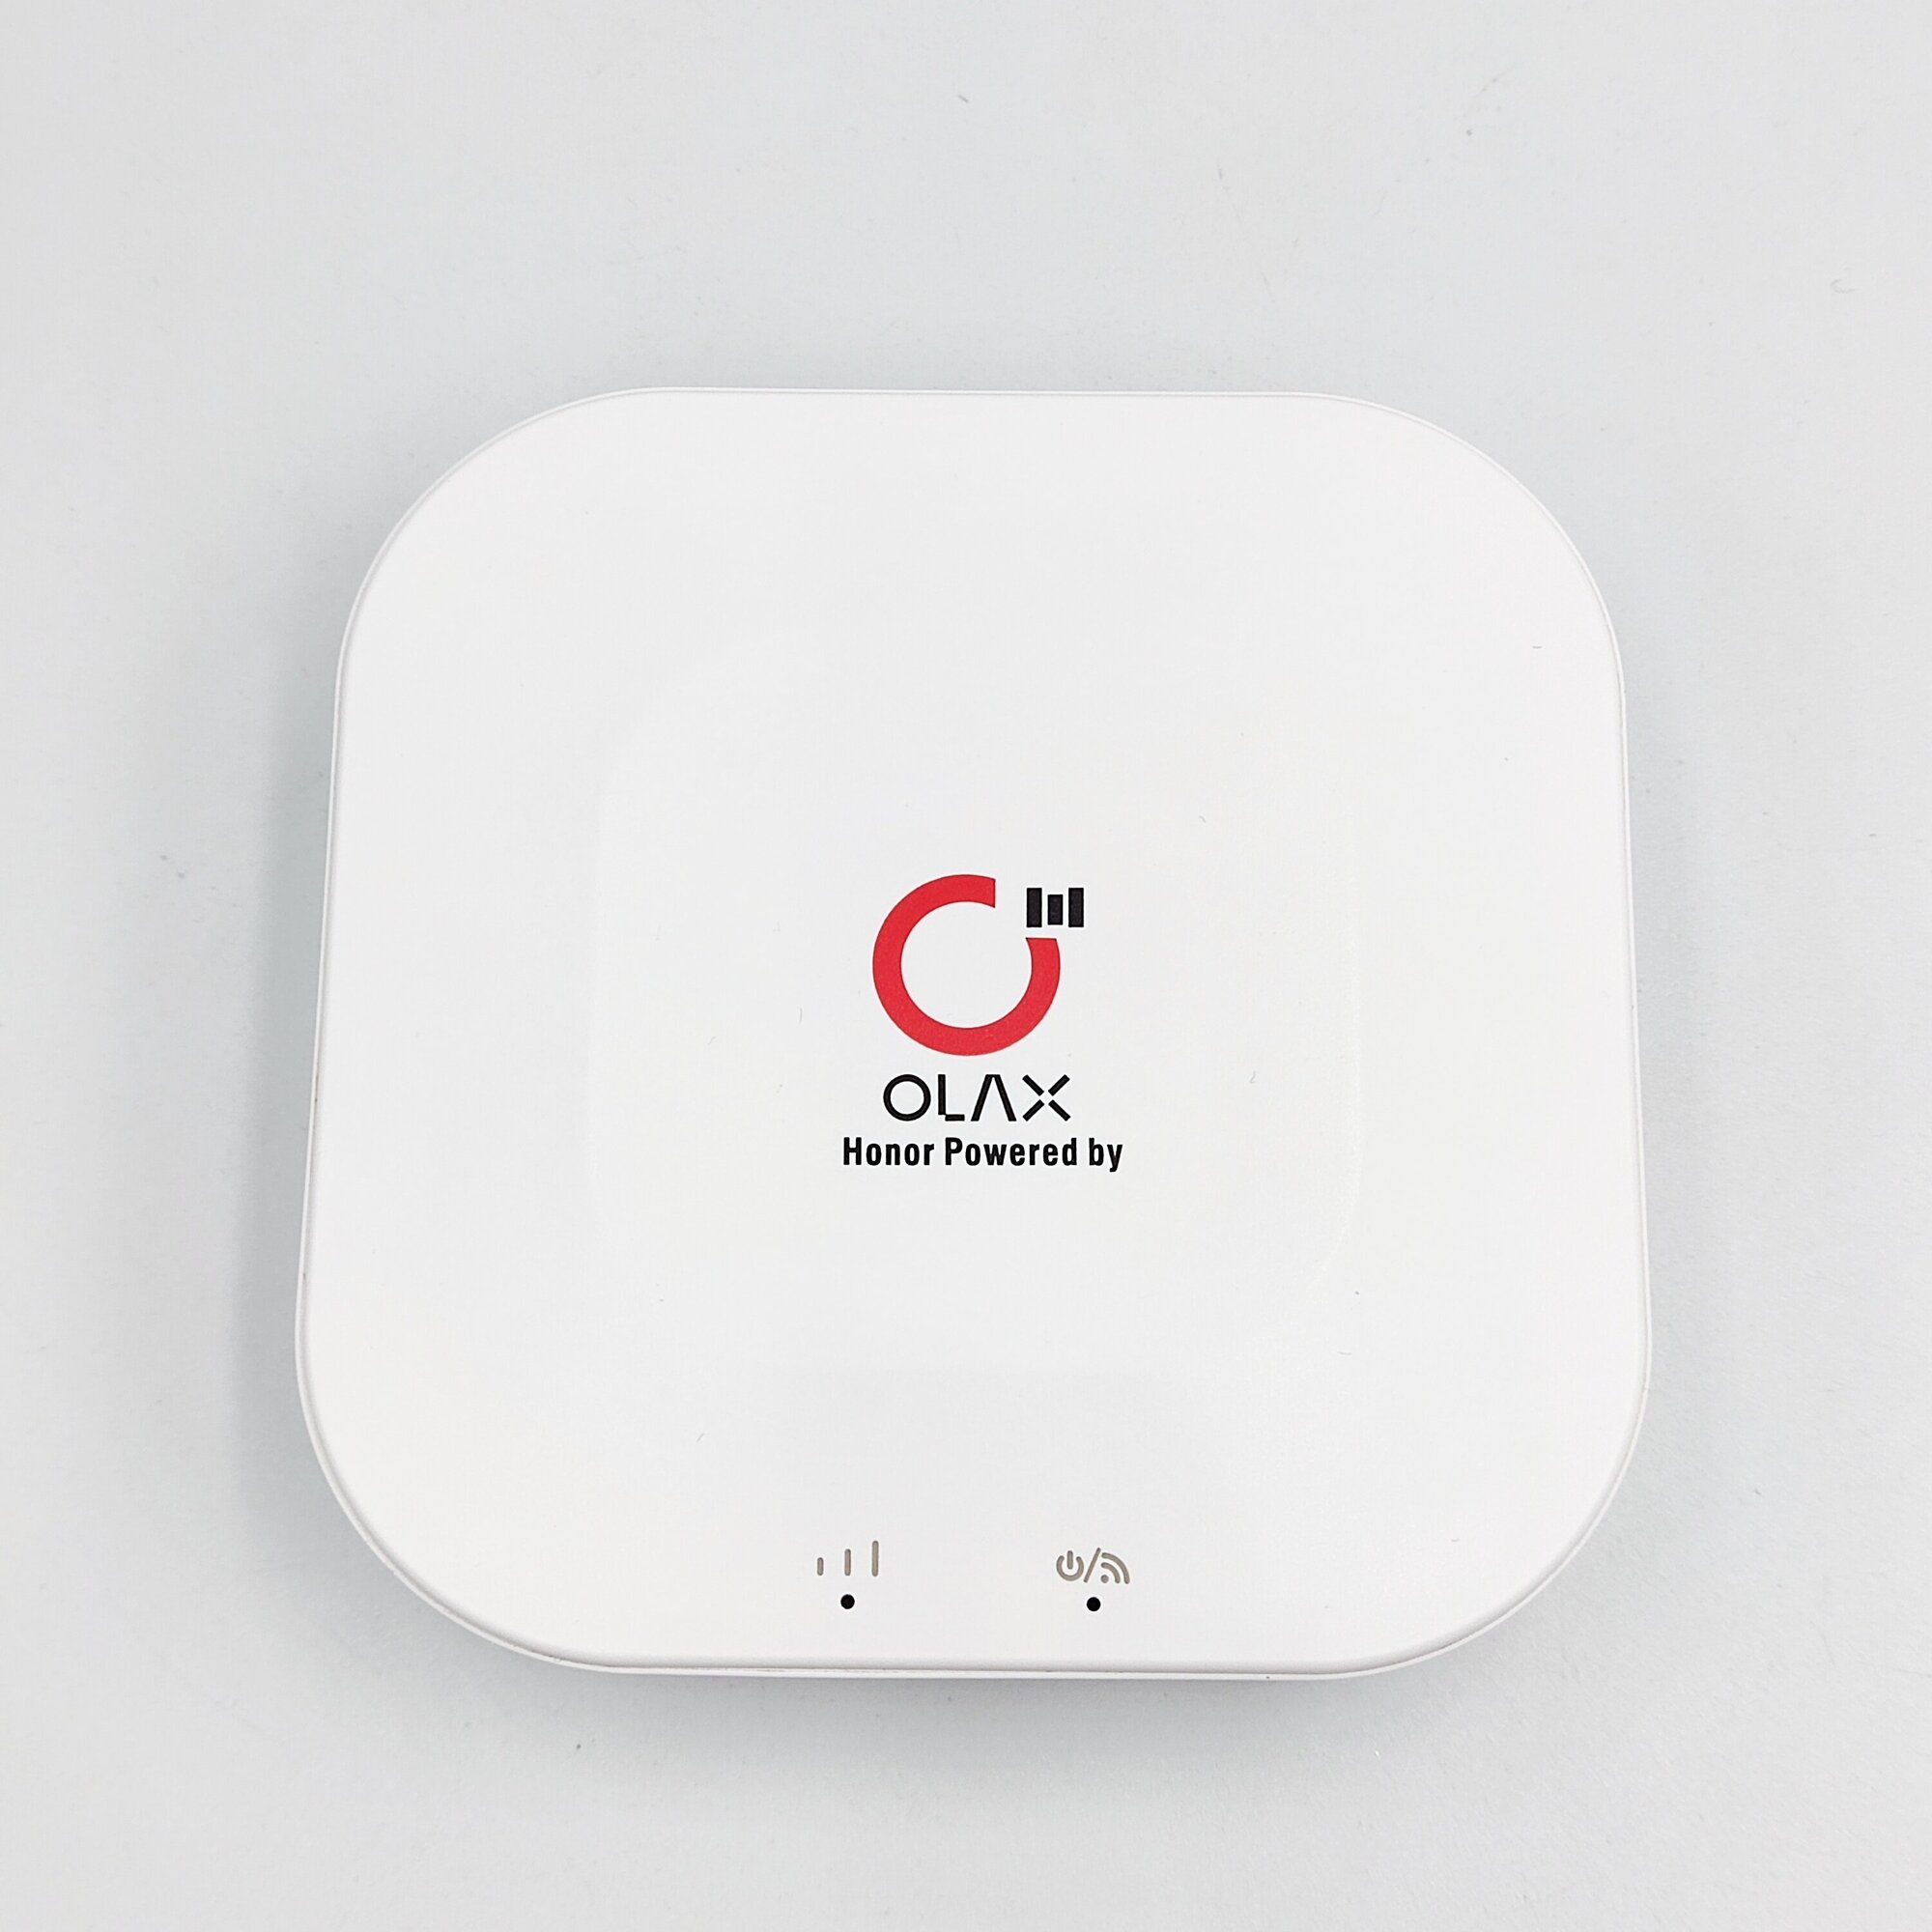 4G мобильный Wi-Fi роутер Olax mt30 4000 mAh работает со всеми операторами любые тарифы смена IMEI TTL